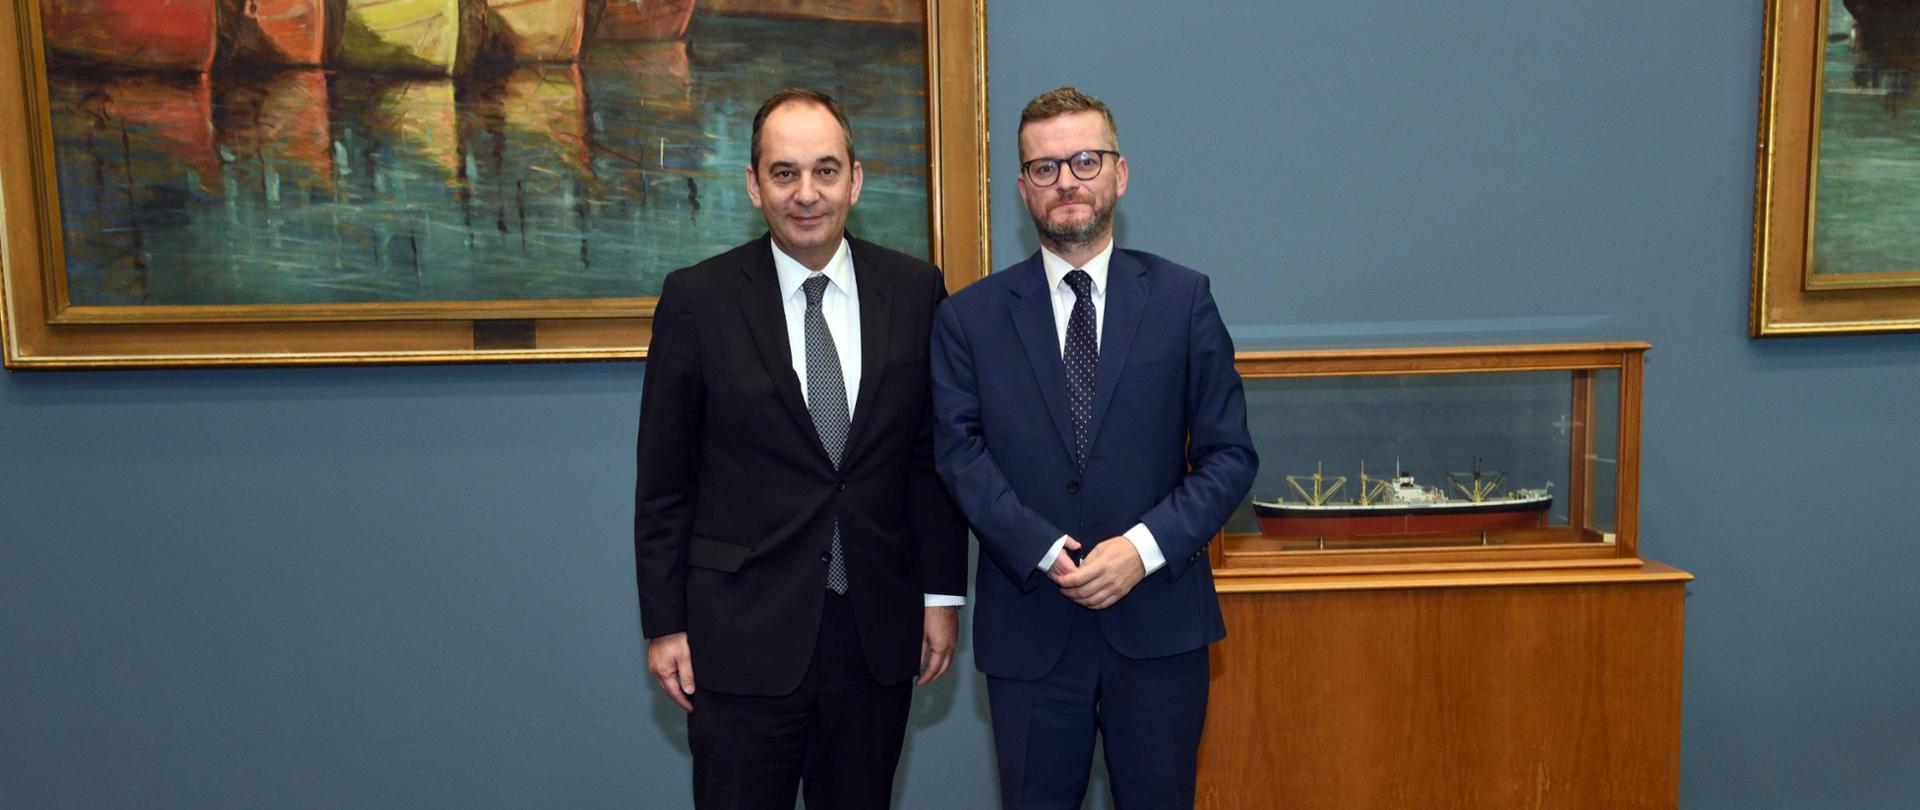 Minister Grzegorz Witkowski na spotkanie w Ministerstwie Gospodarki Morskiej i Polityki Wysp, gdzie spotkał się z ministrem ds. morskich Grecji Ioannisem Plakiotakisem.